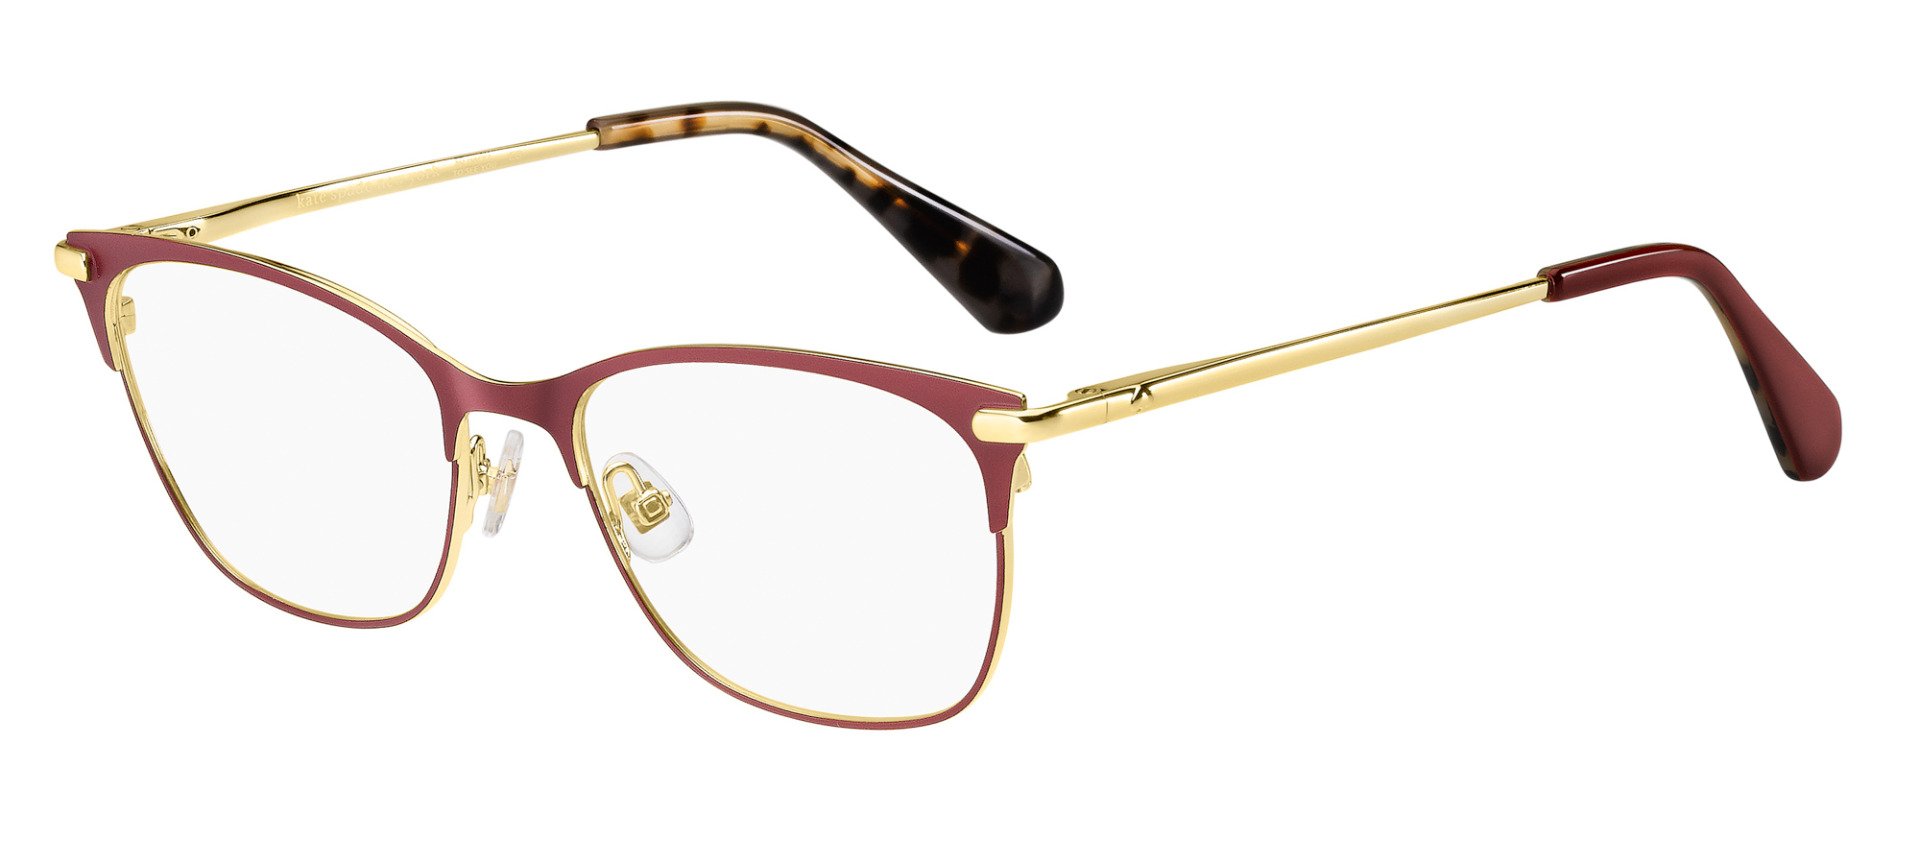 Kate Spade Bendall Rectangle Glasses | Fashion Eyewear UK